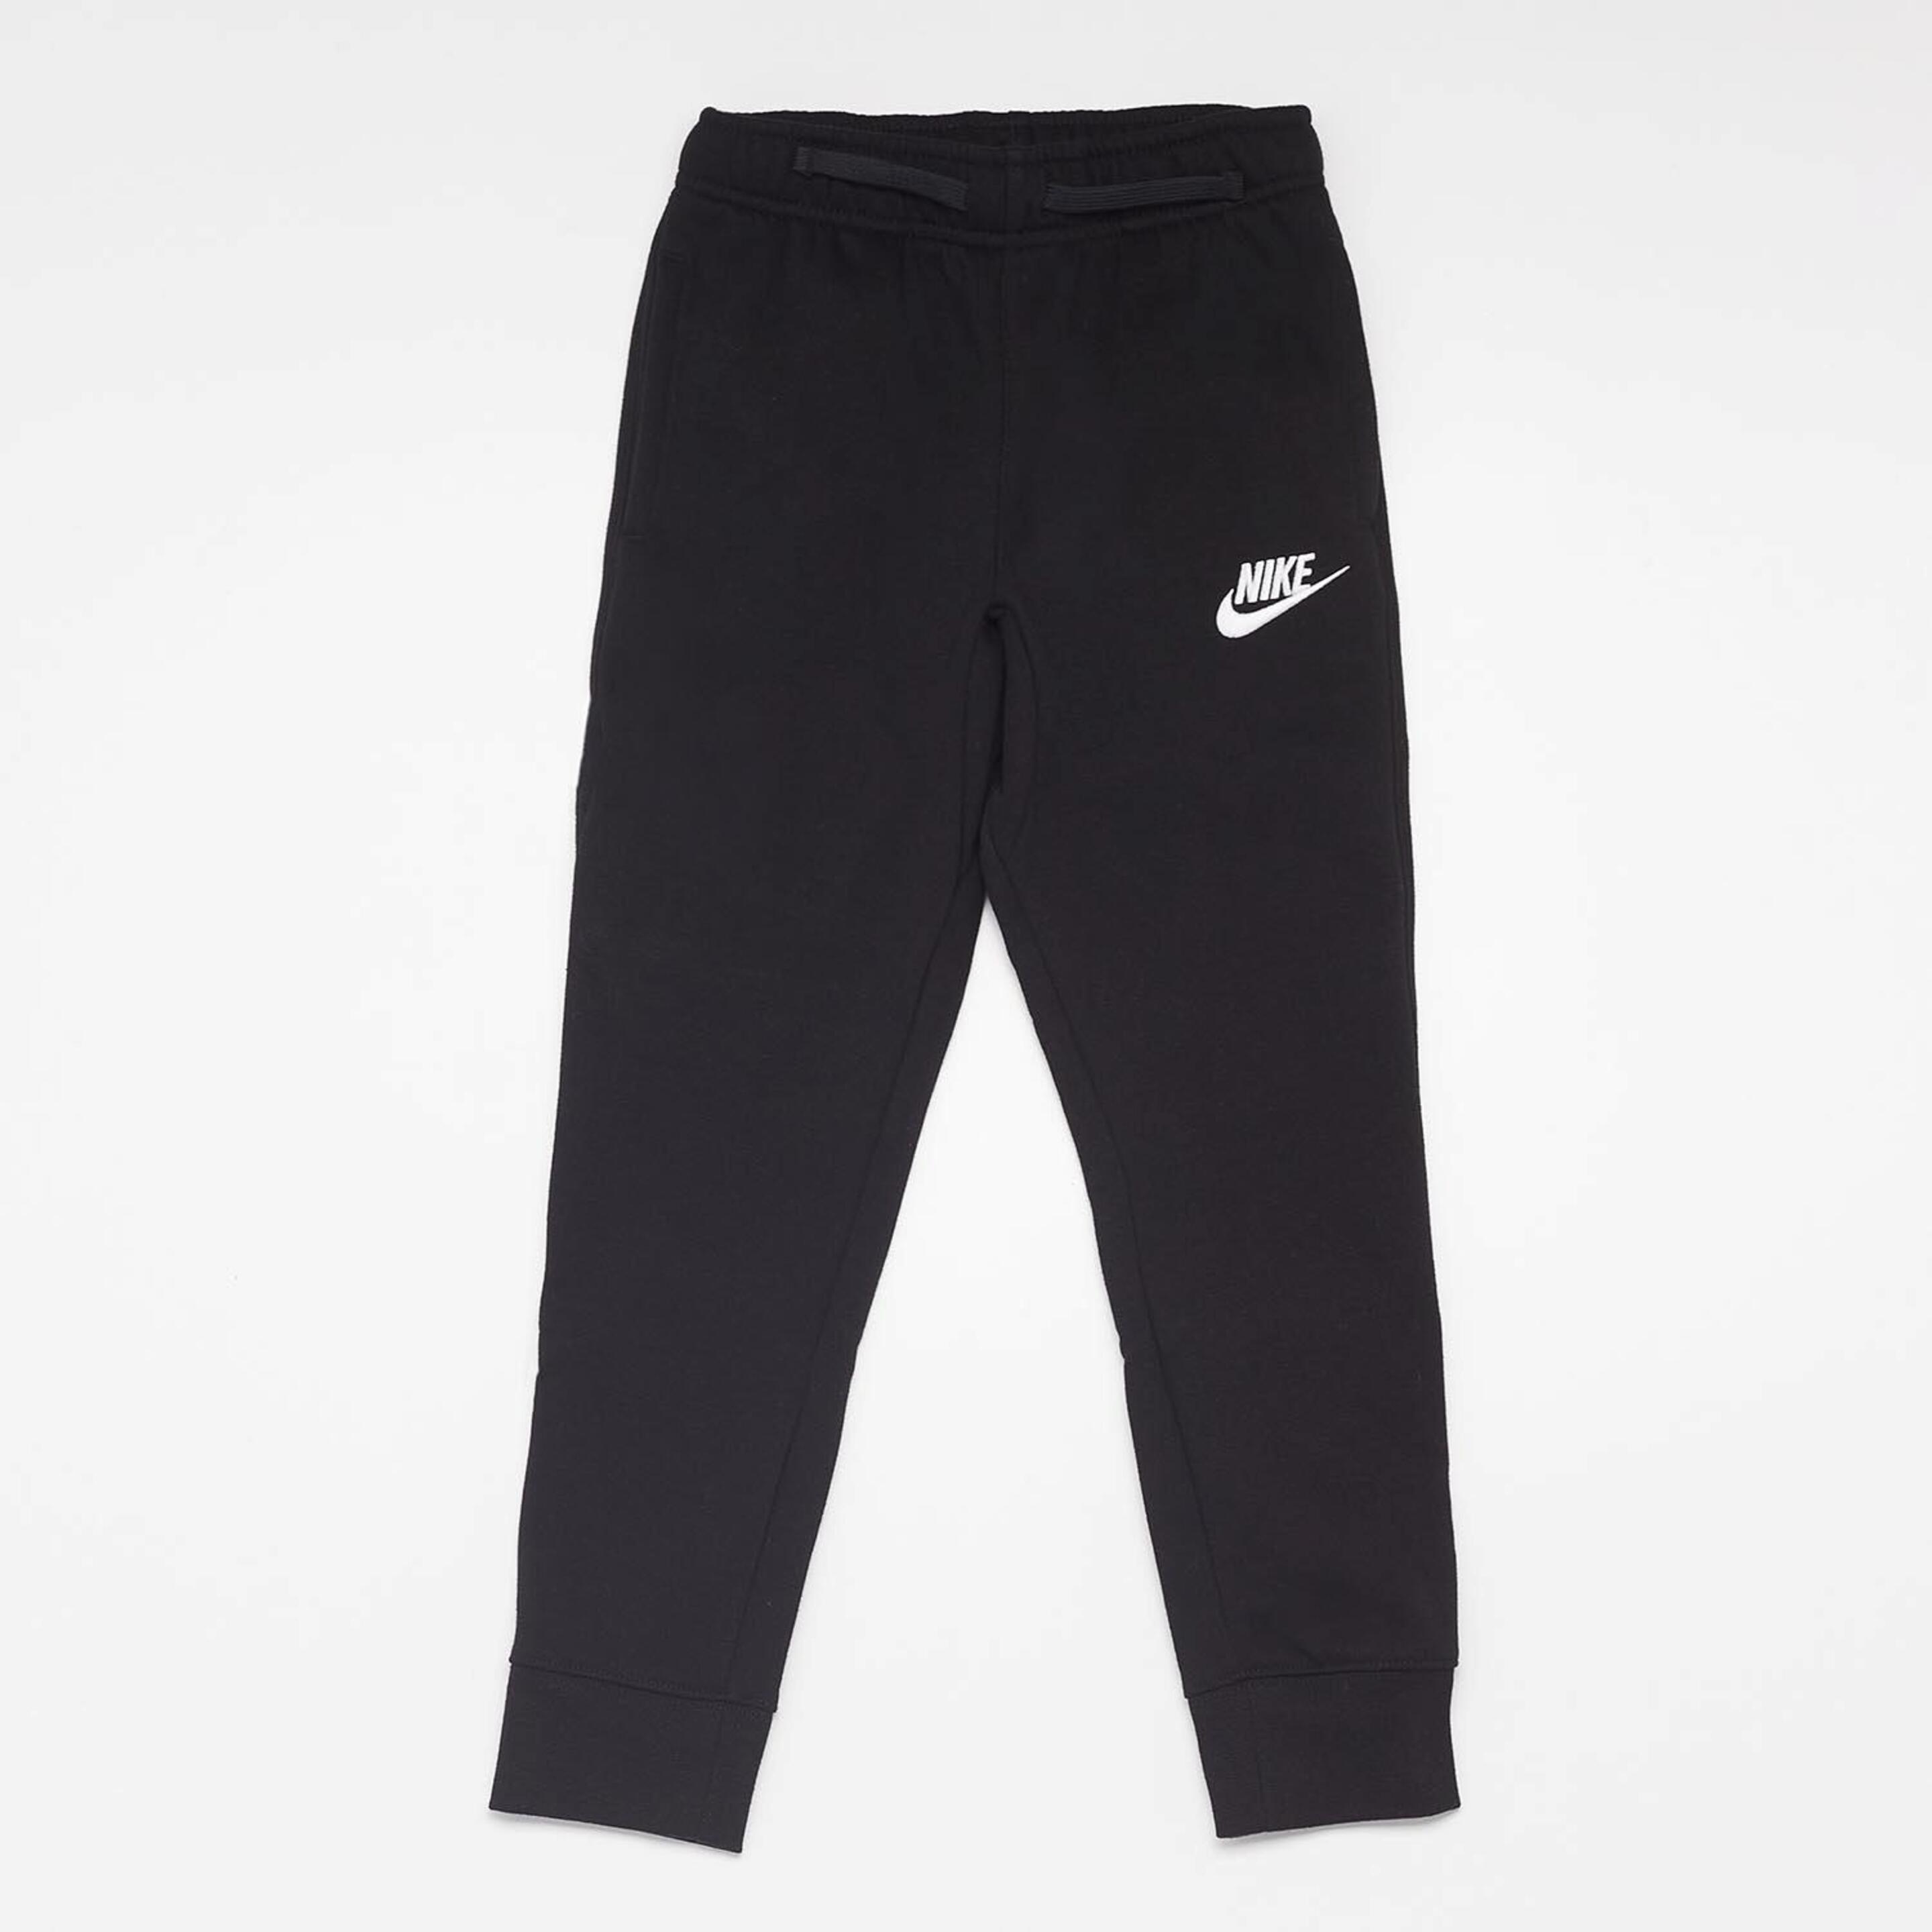 Pantalón Nike - negro - Pantalón Niño